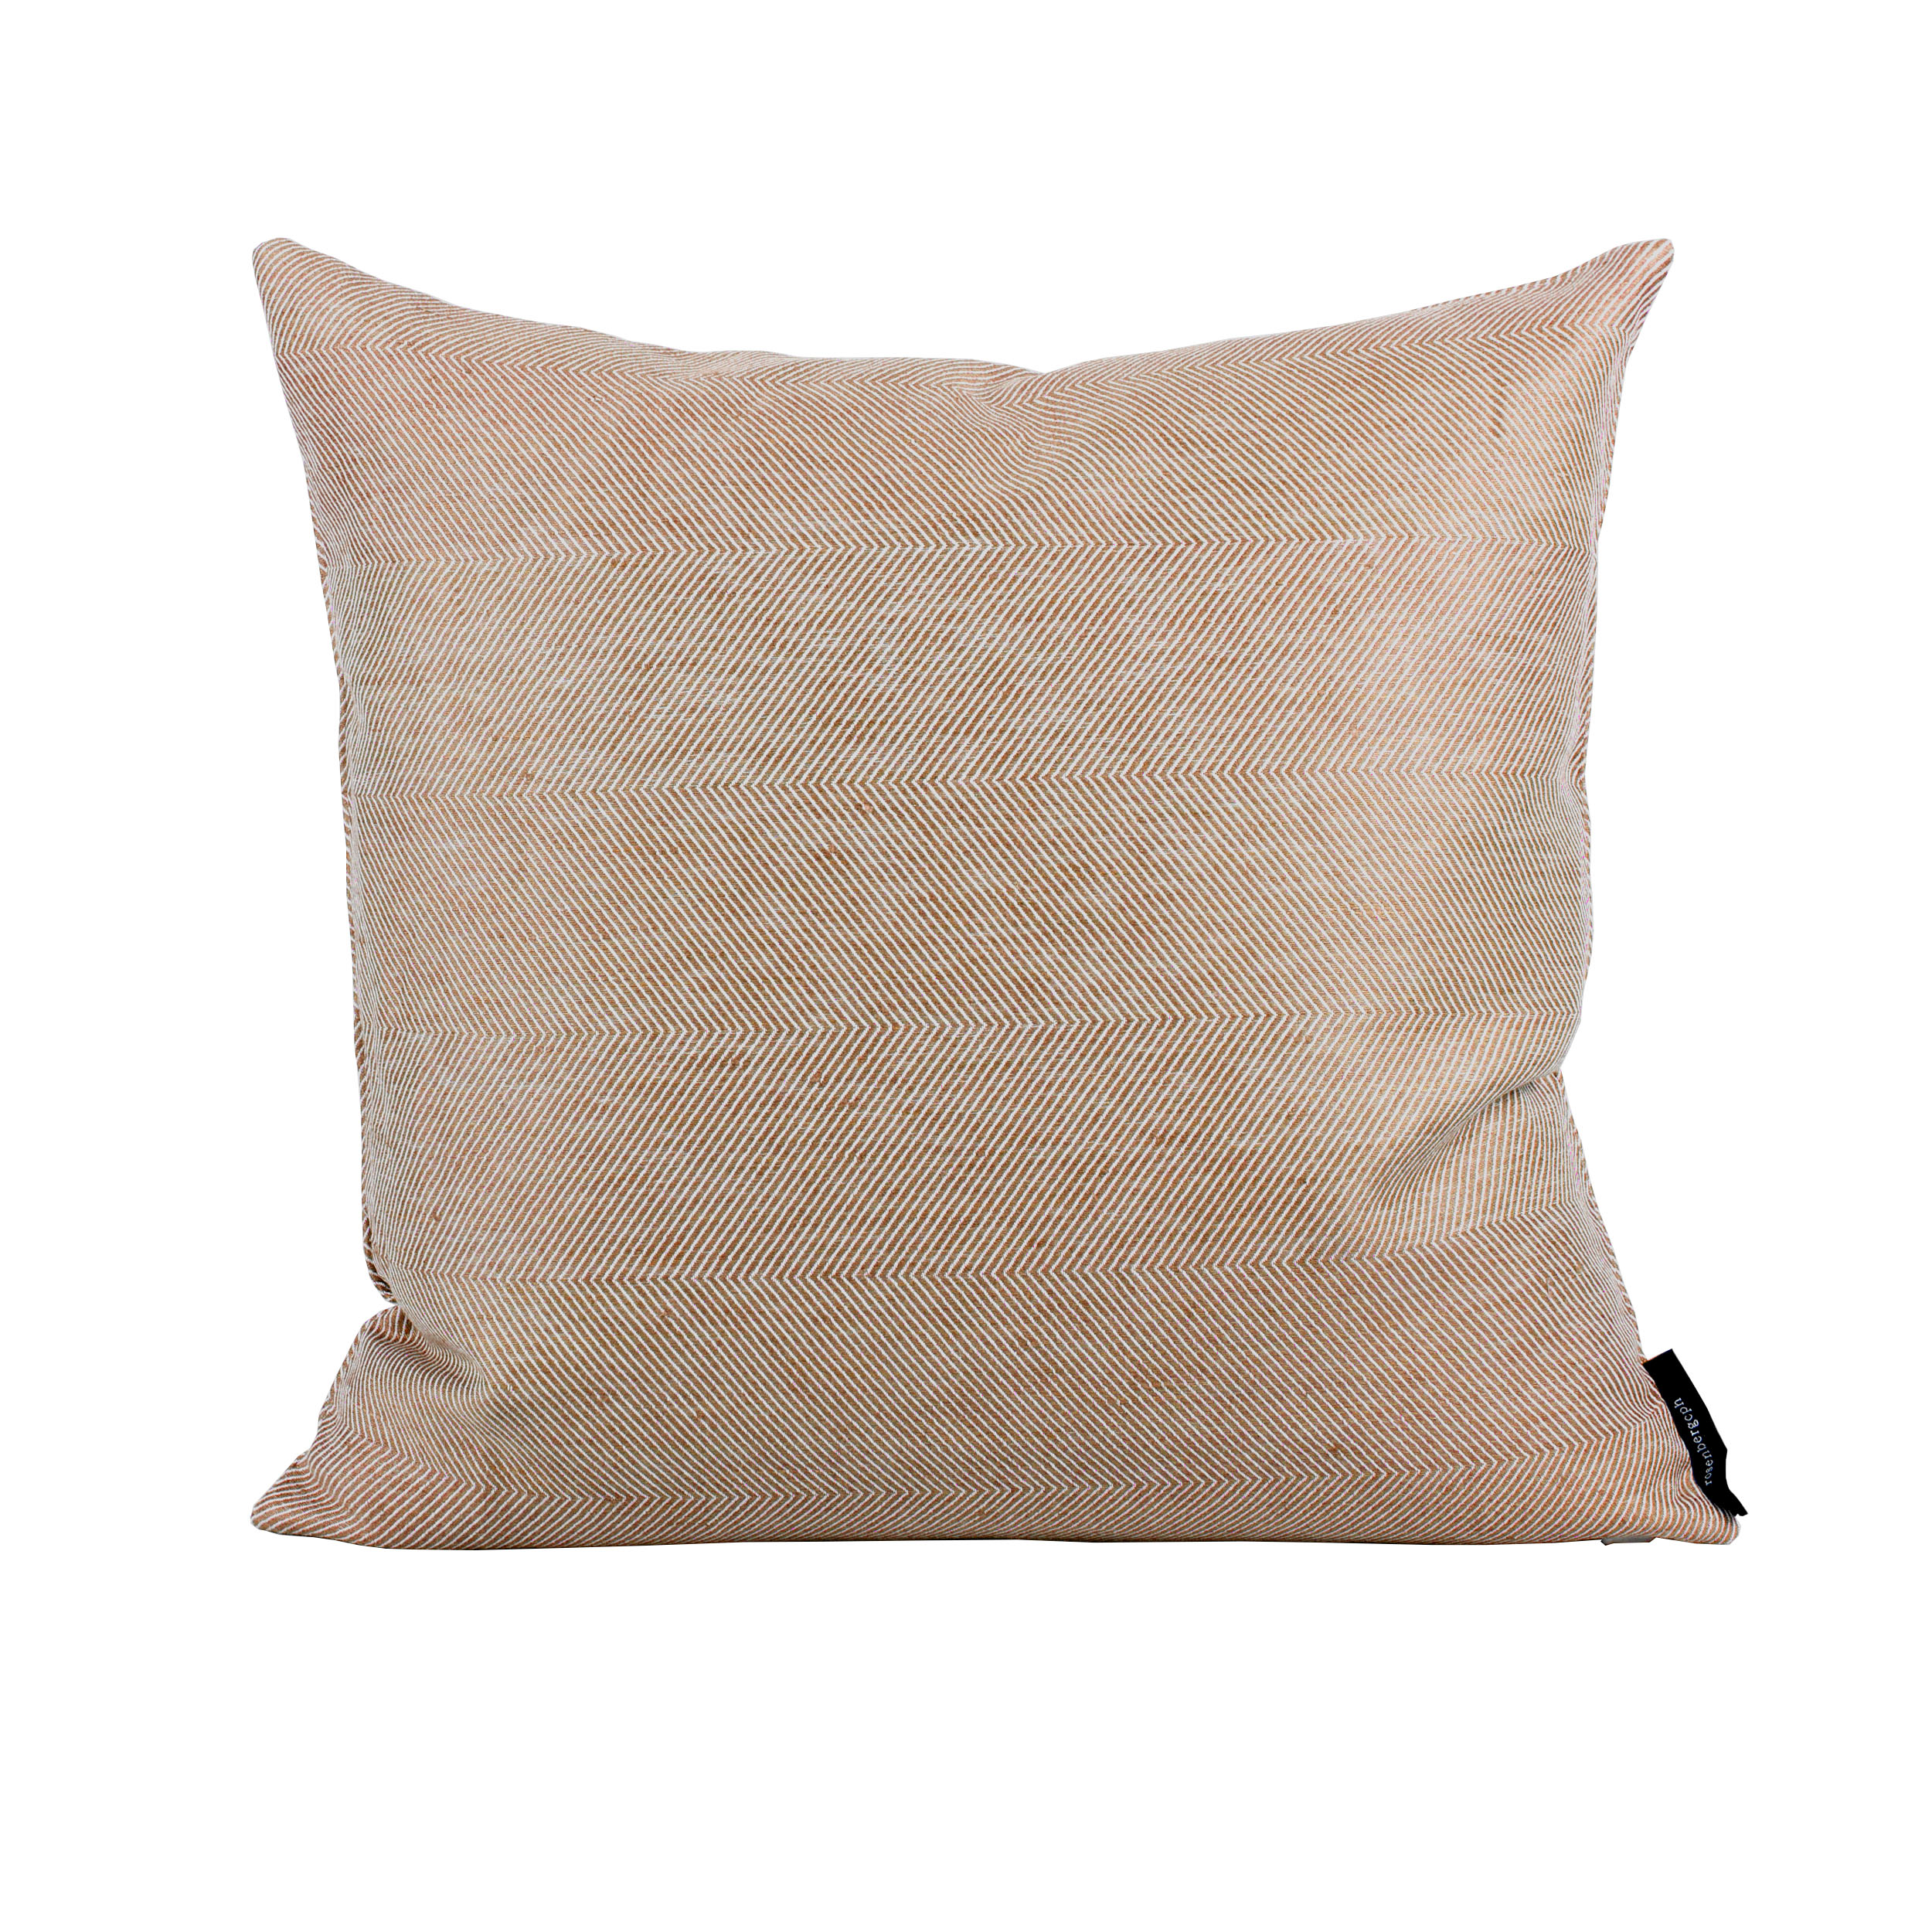 Square cushion linen/cotton Almond, design by Anne Rosenberg, RosenbergCph